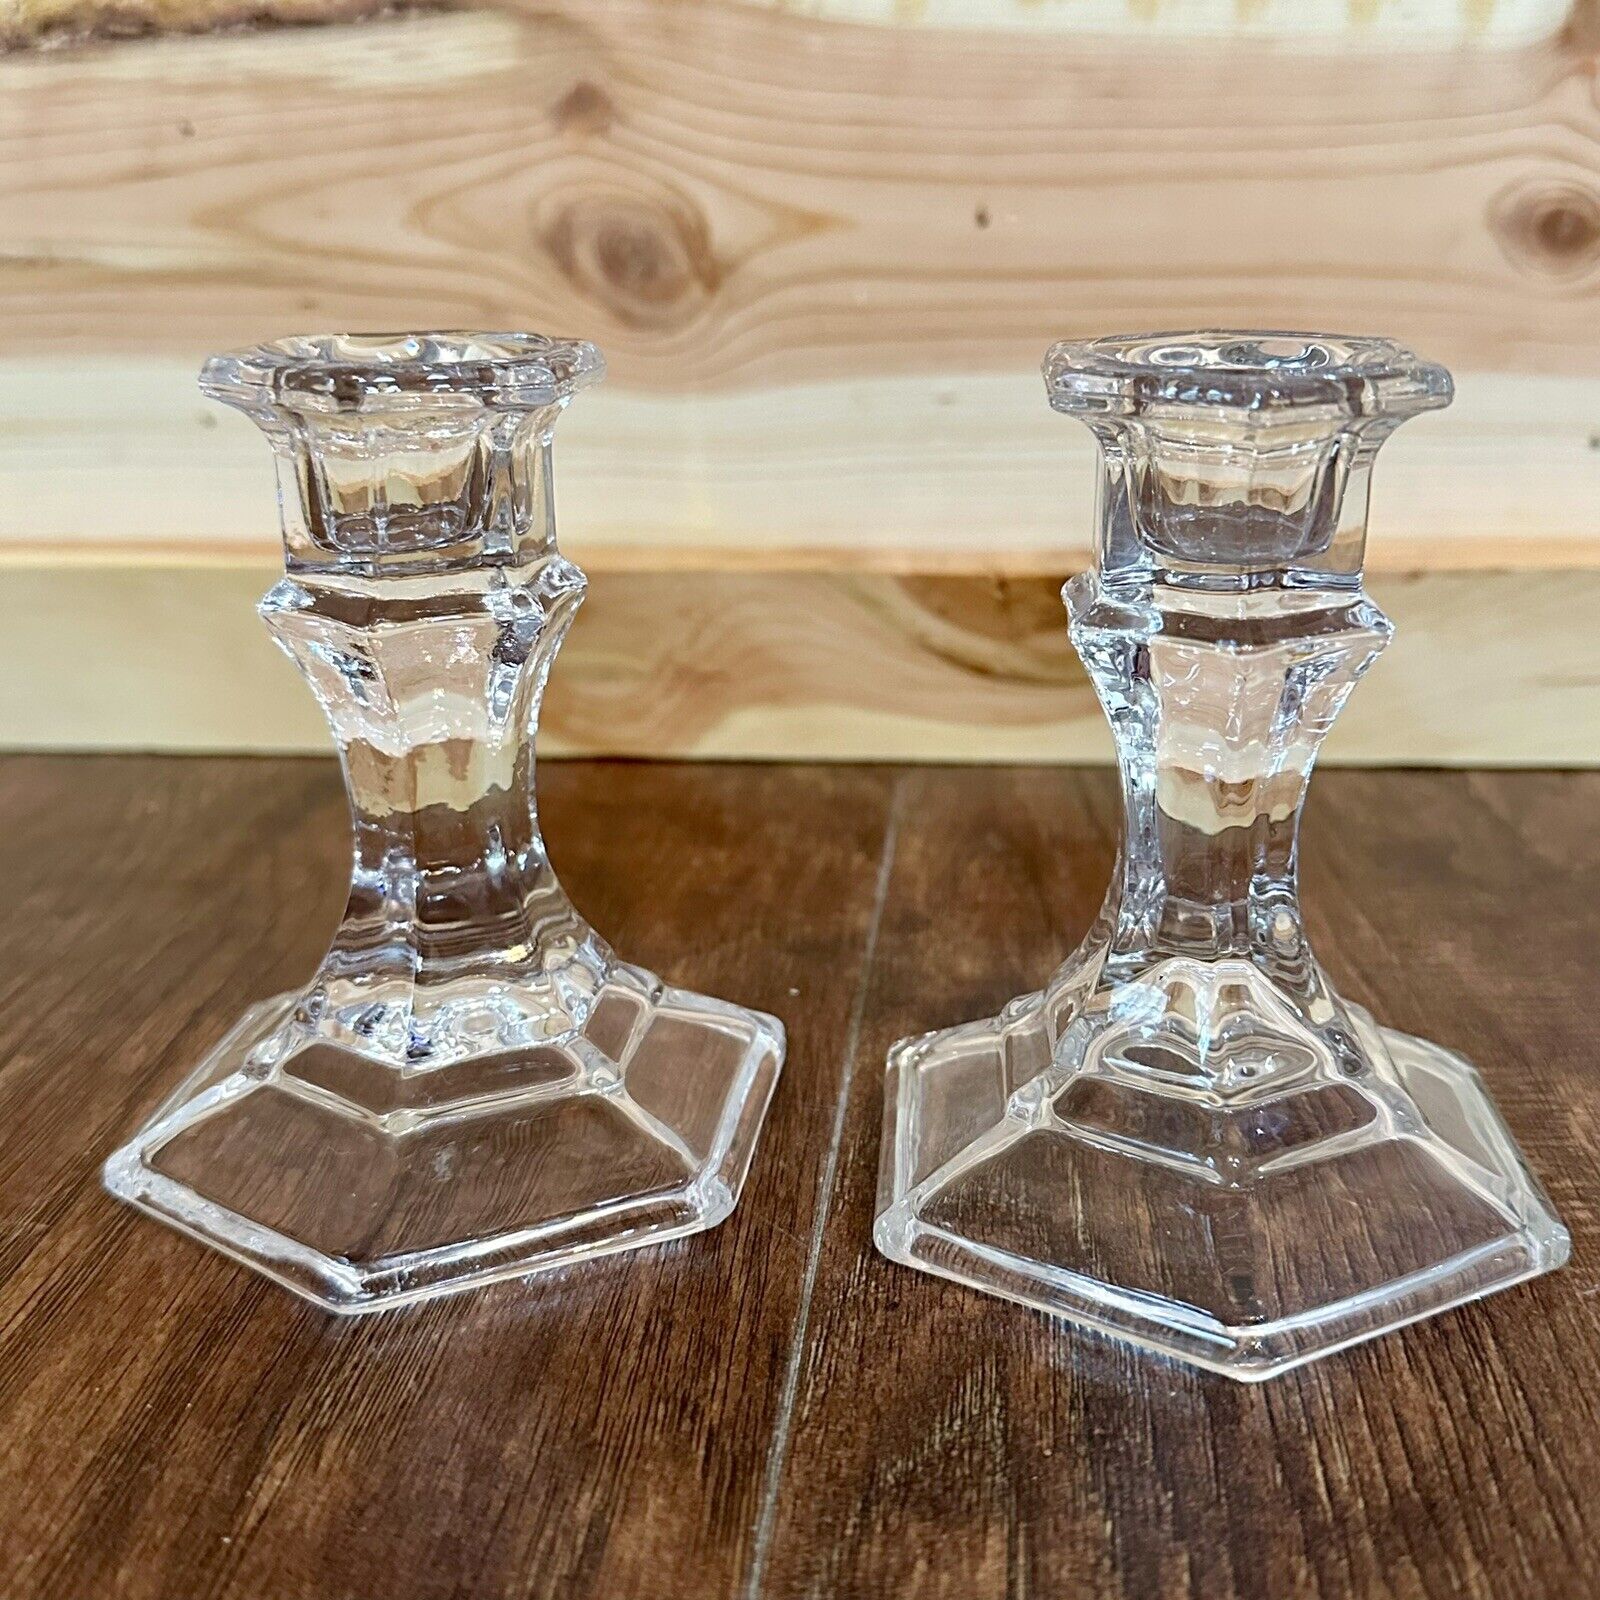 Vintage Crystal Glass Candlestick Holders Set of 2